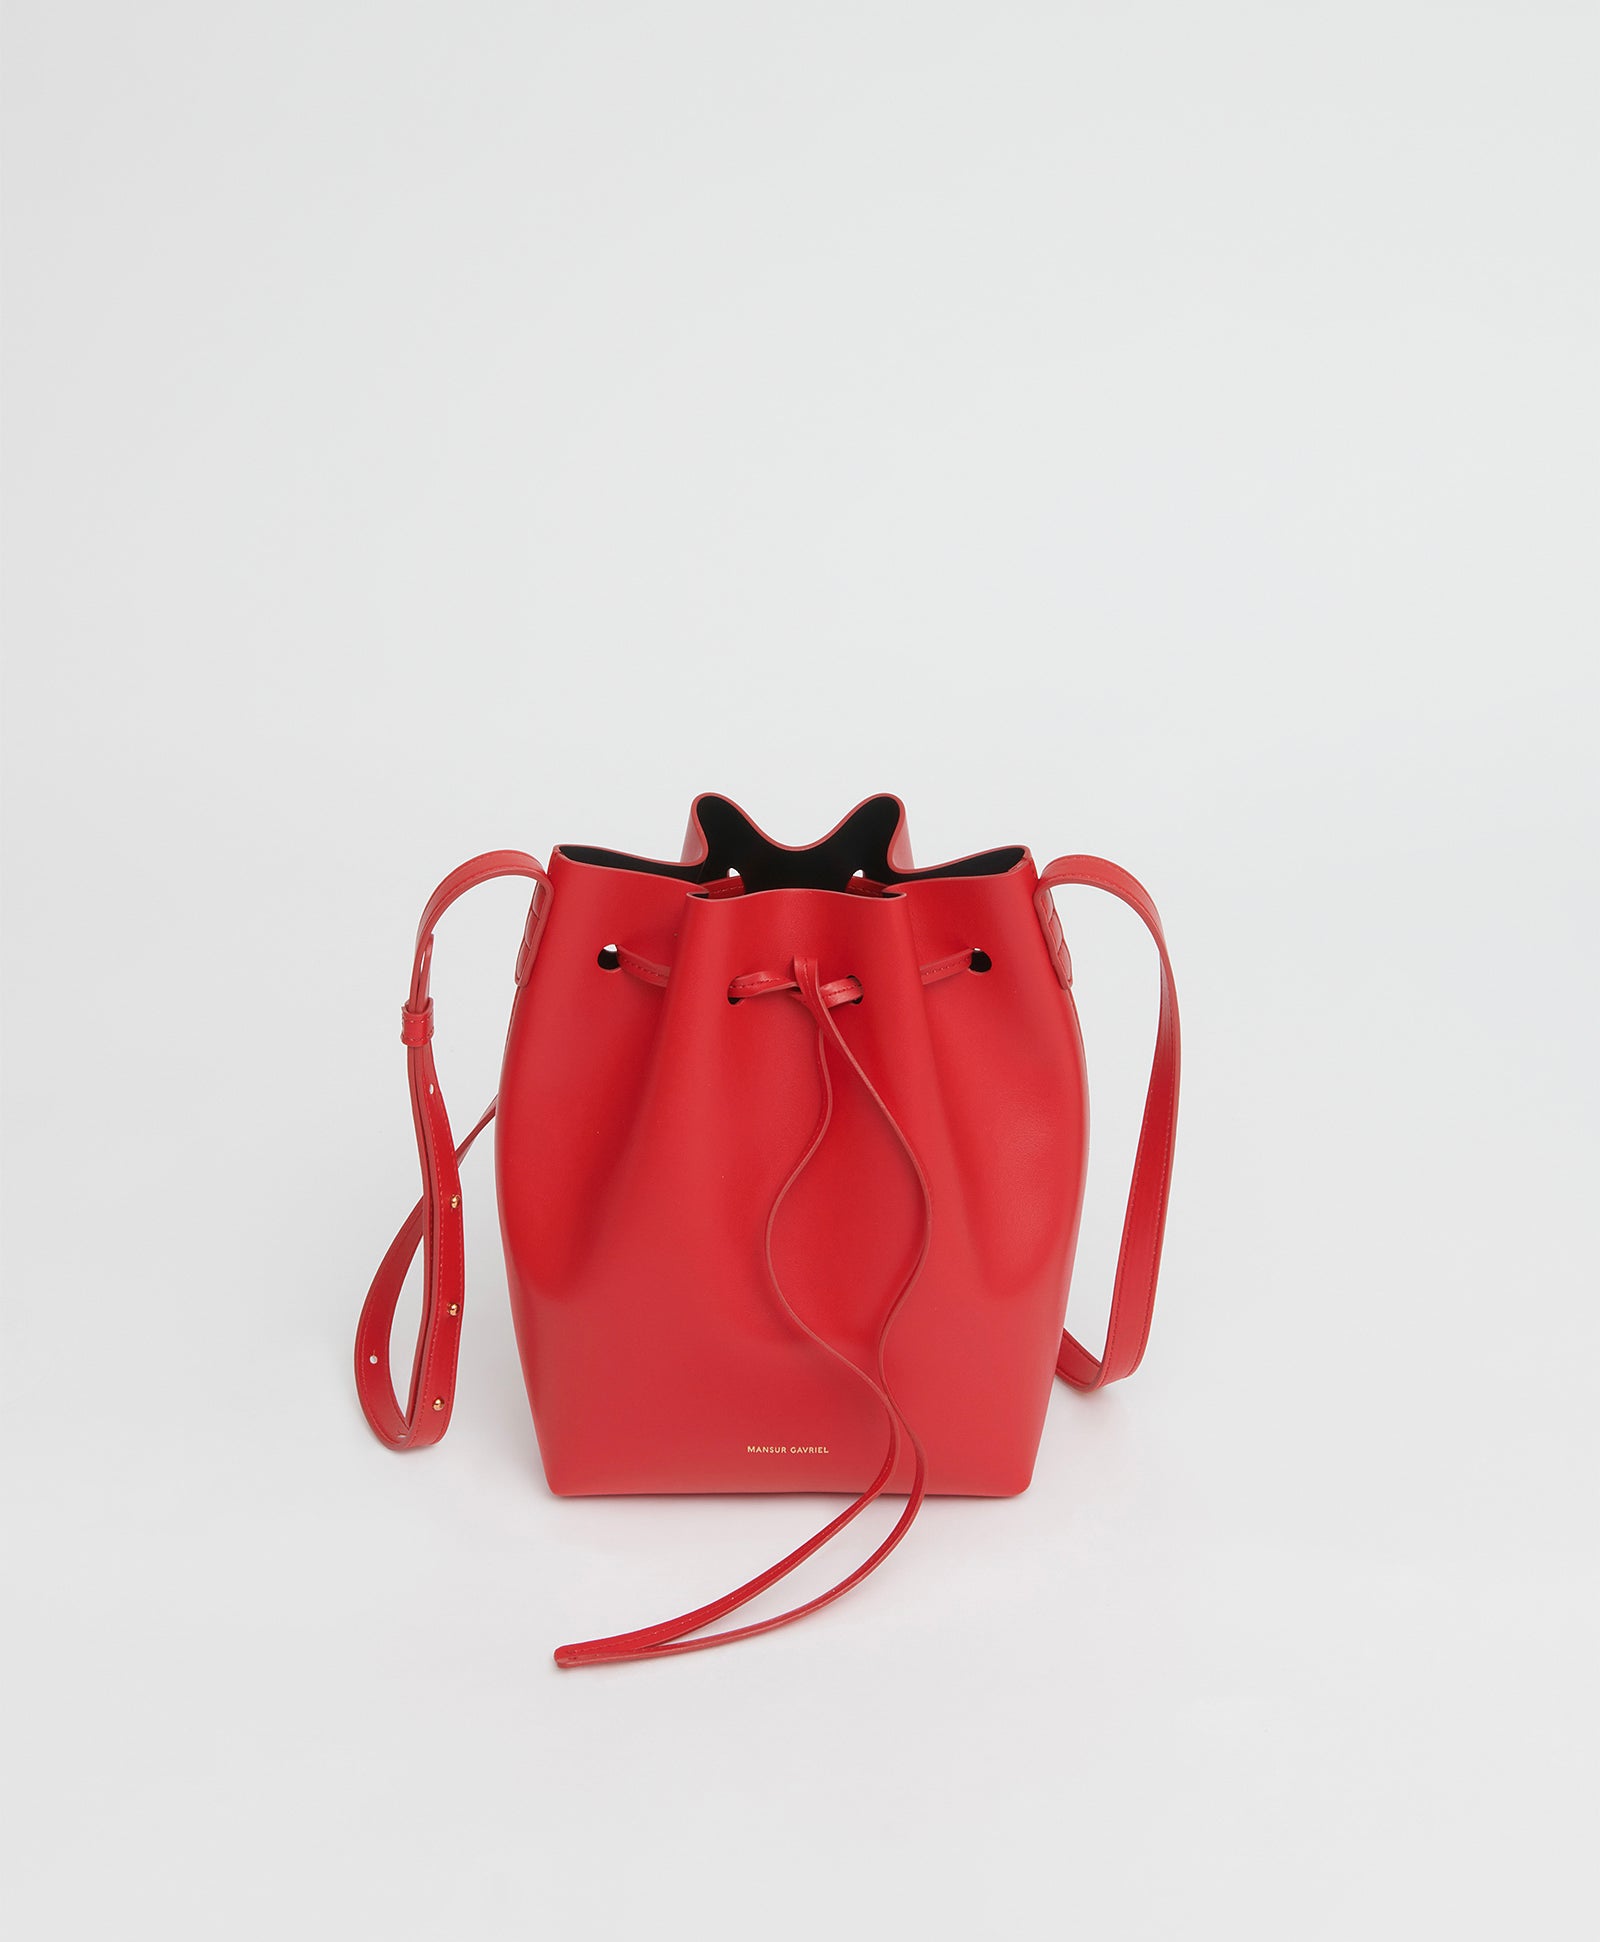 Cute Designer Baguette Bags From Coach, Mansur Gavriel, & More